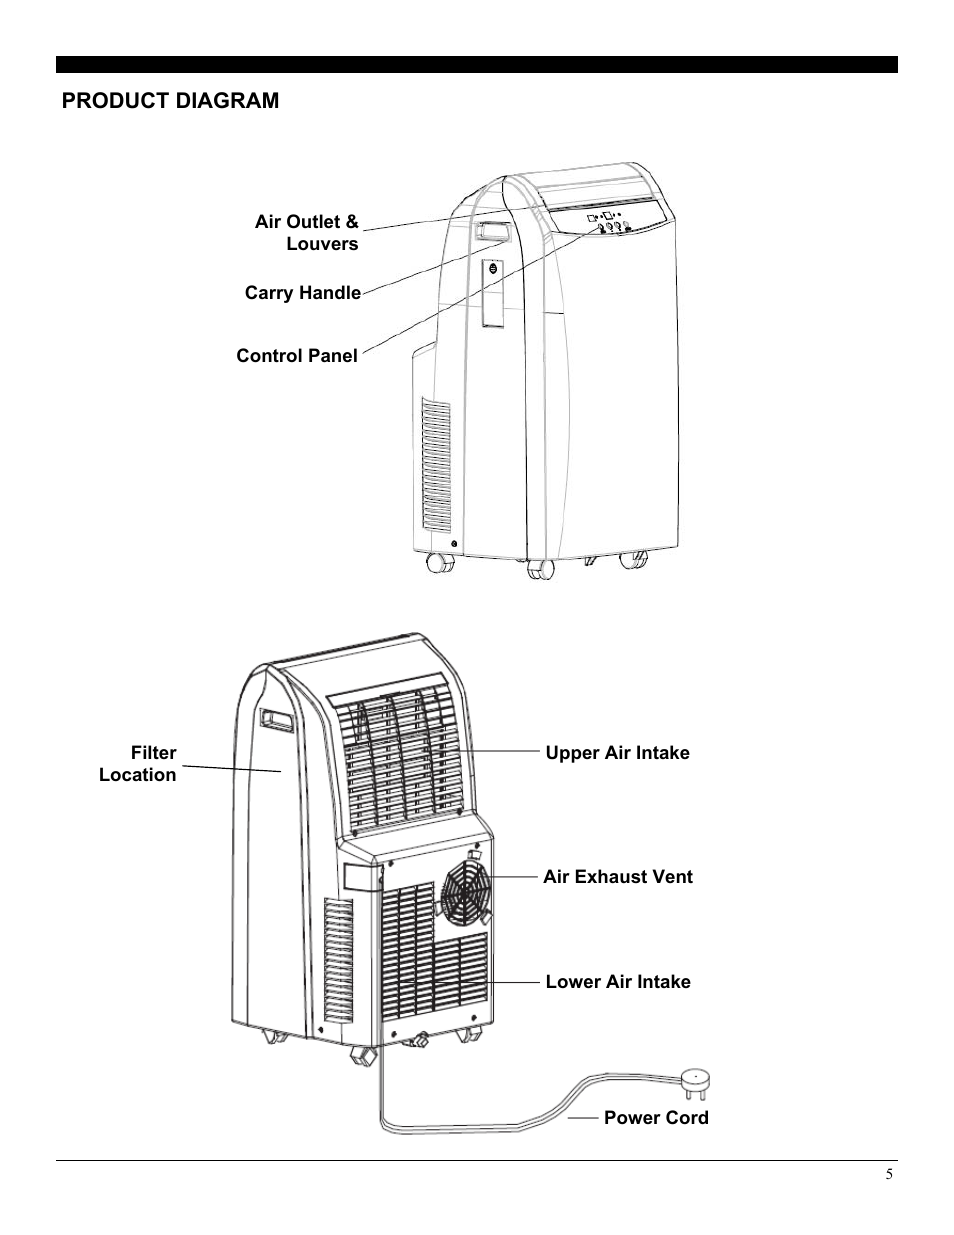 Soleus mac-7500 portable air conditioner manual